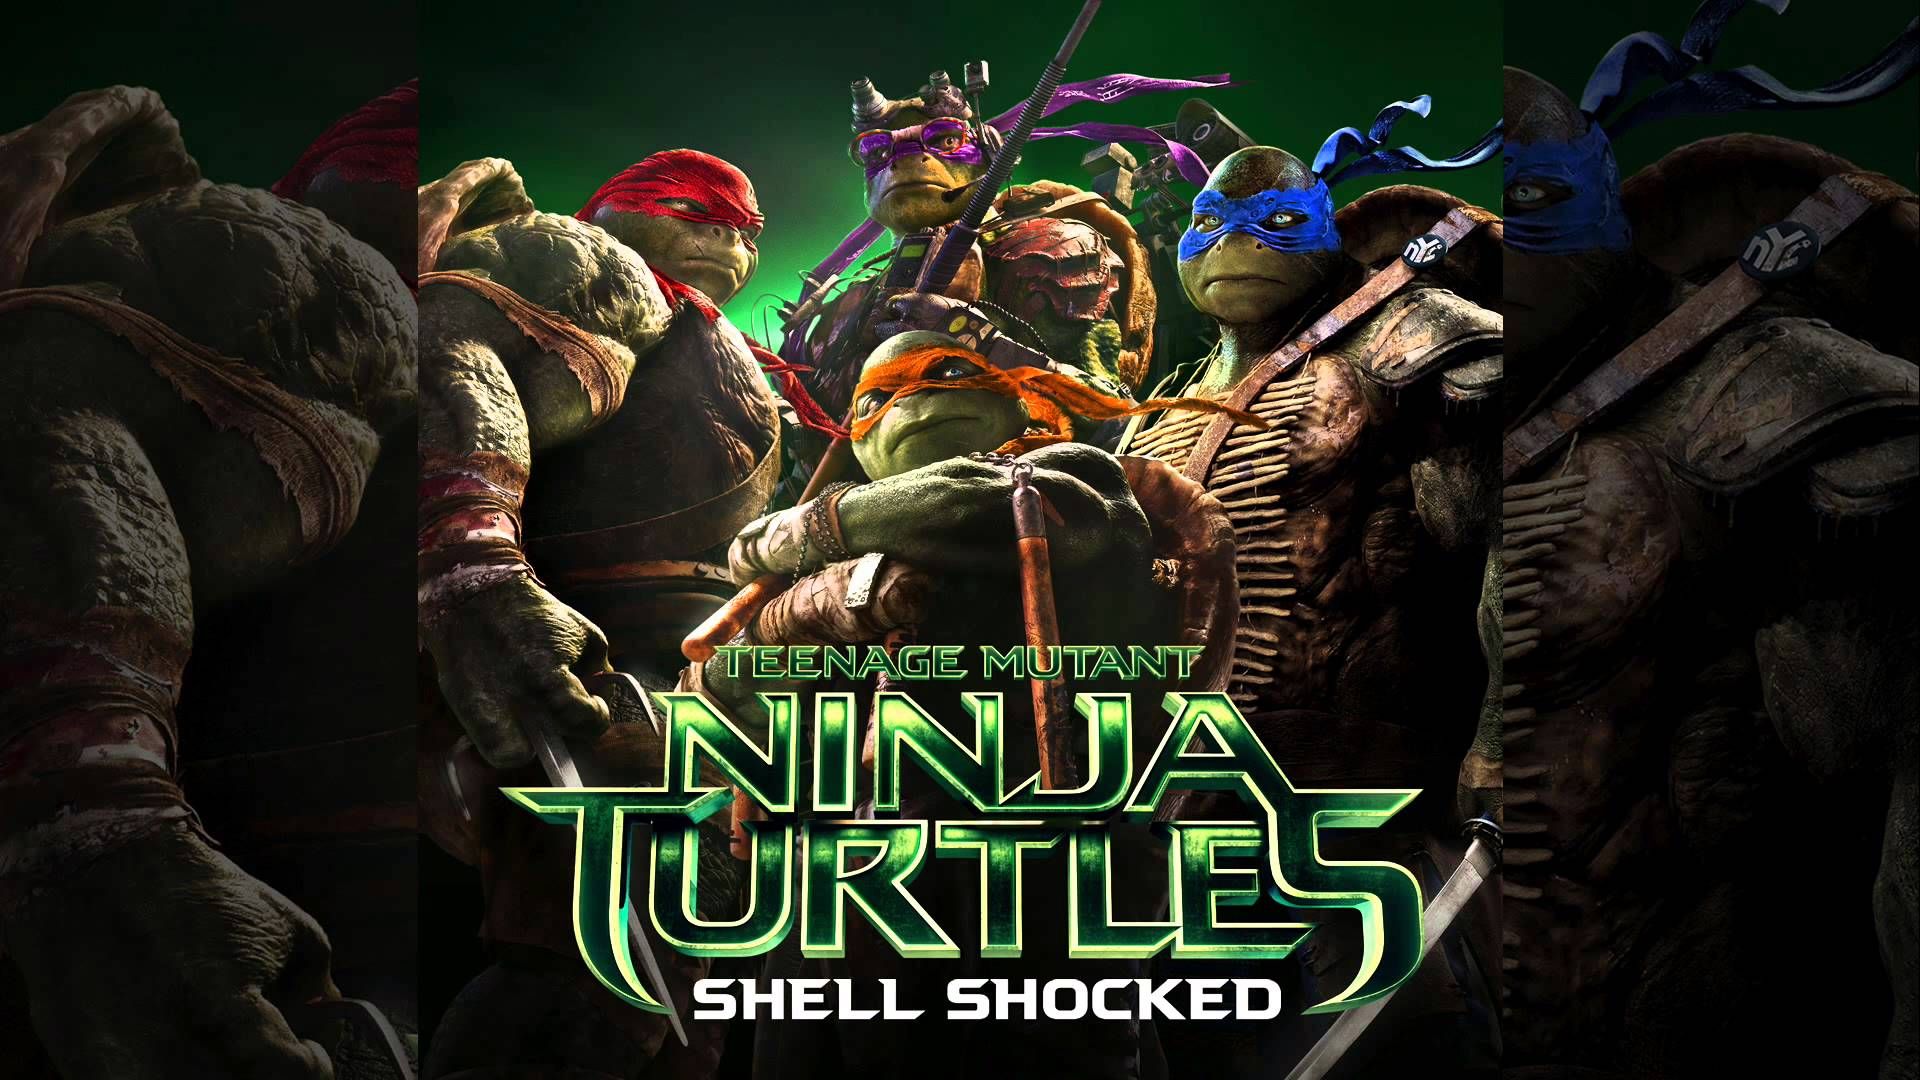 ახალ საუნდტრეკს Ninja Turtles აქვს რეპ ტრეკი კუს შესახებ, რა თქმა უნდა